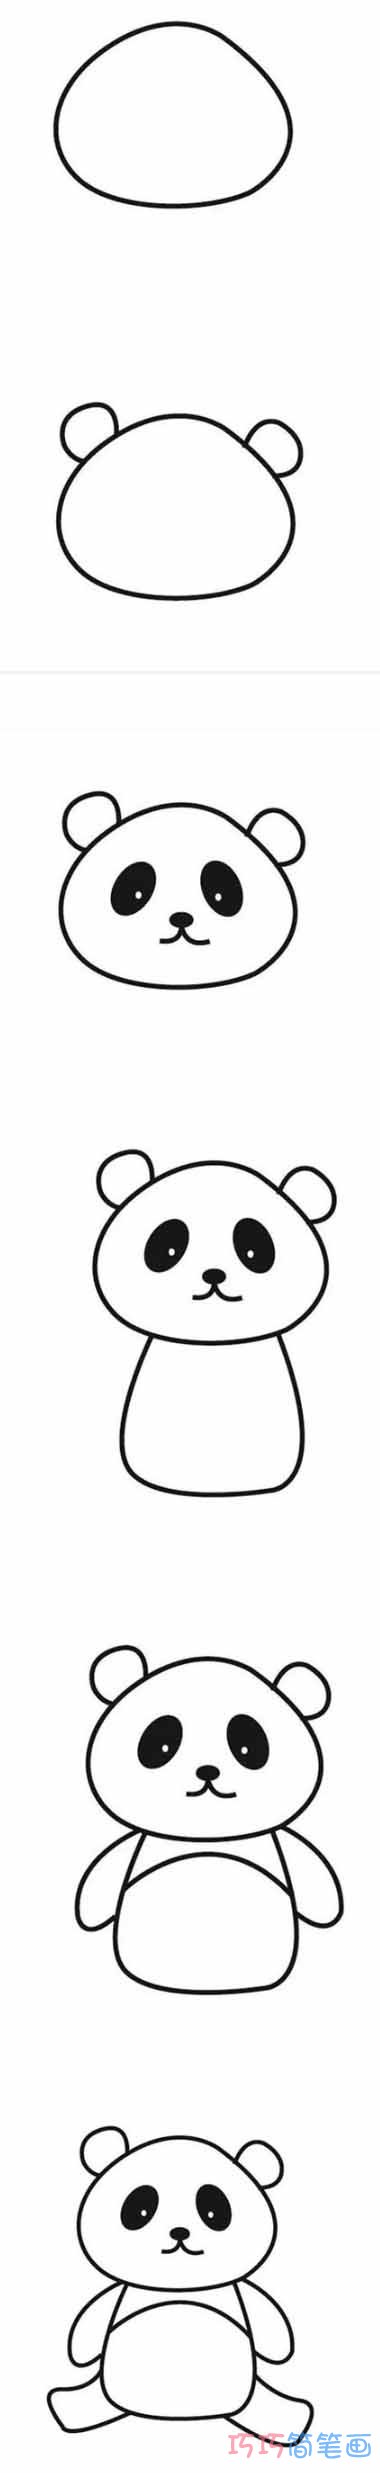 国宝大熊猫怎么画可爱简单 大熊猫简笔画图片